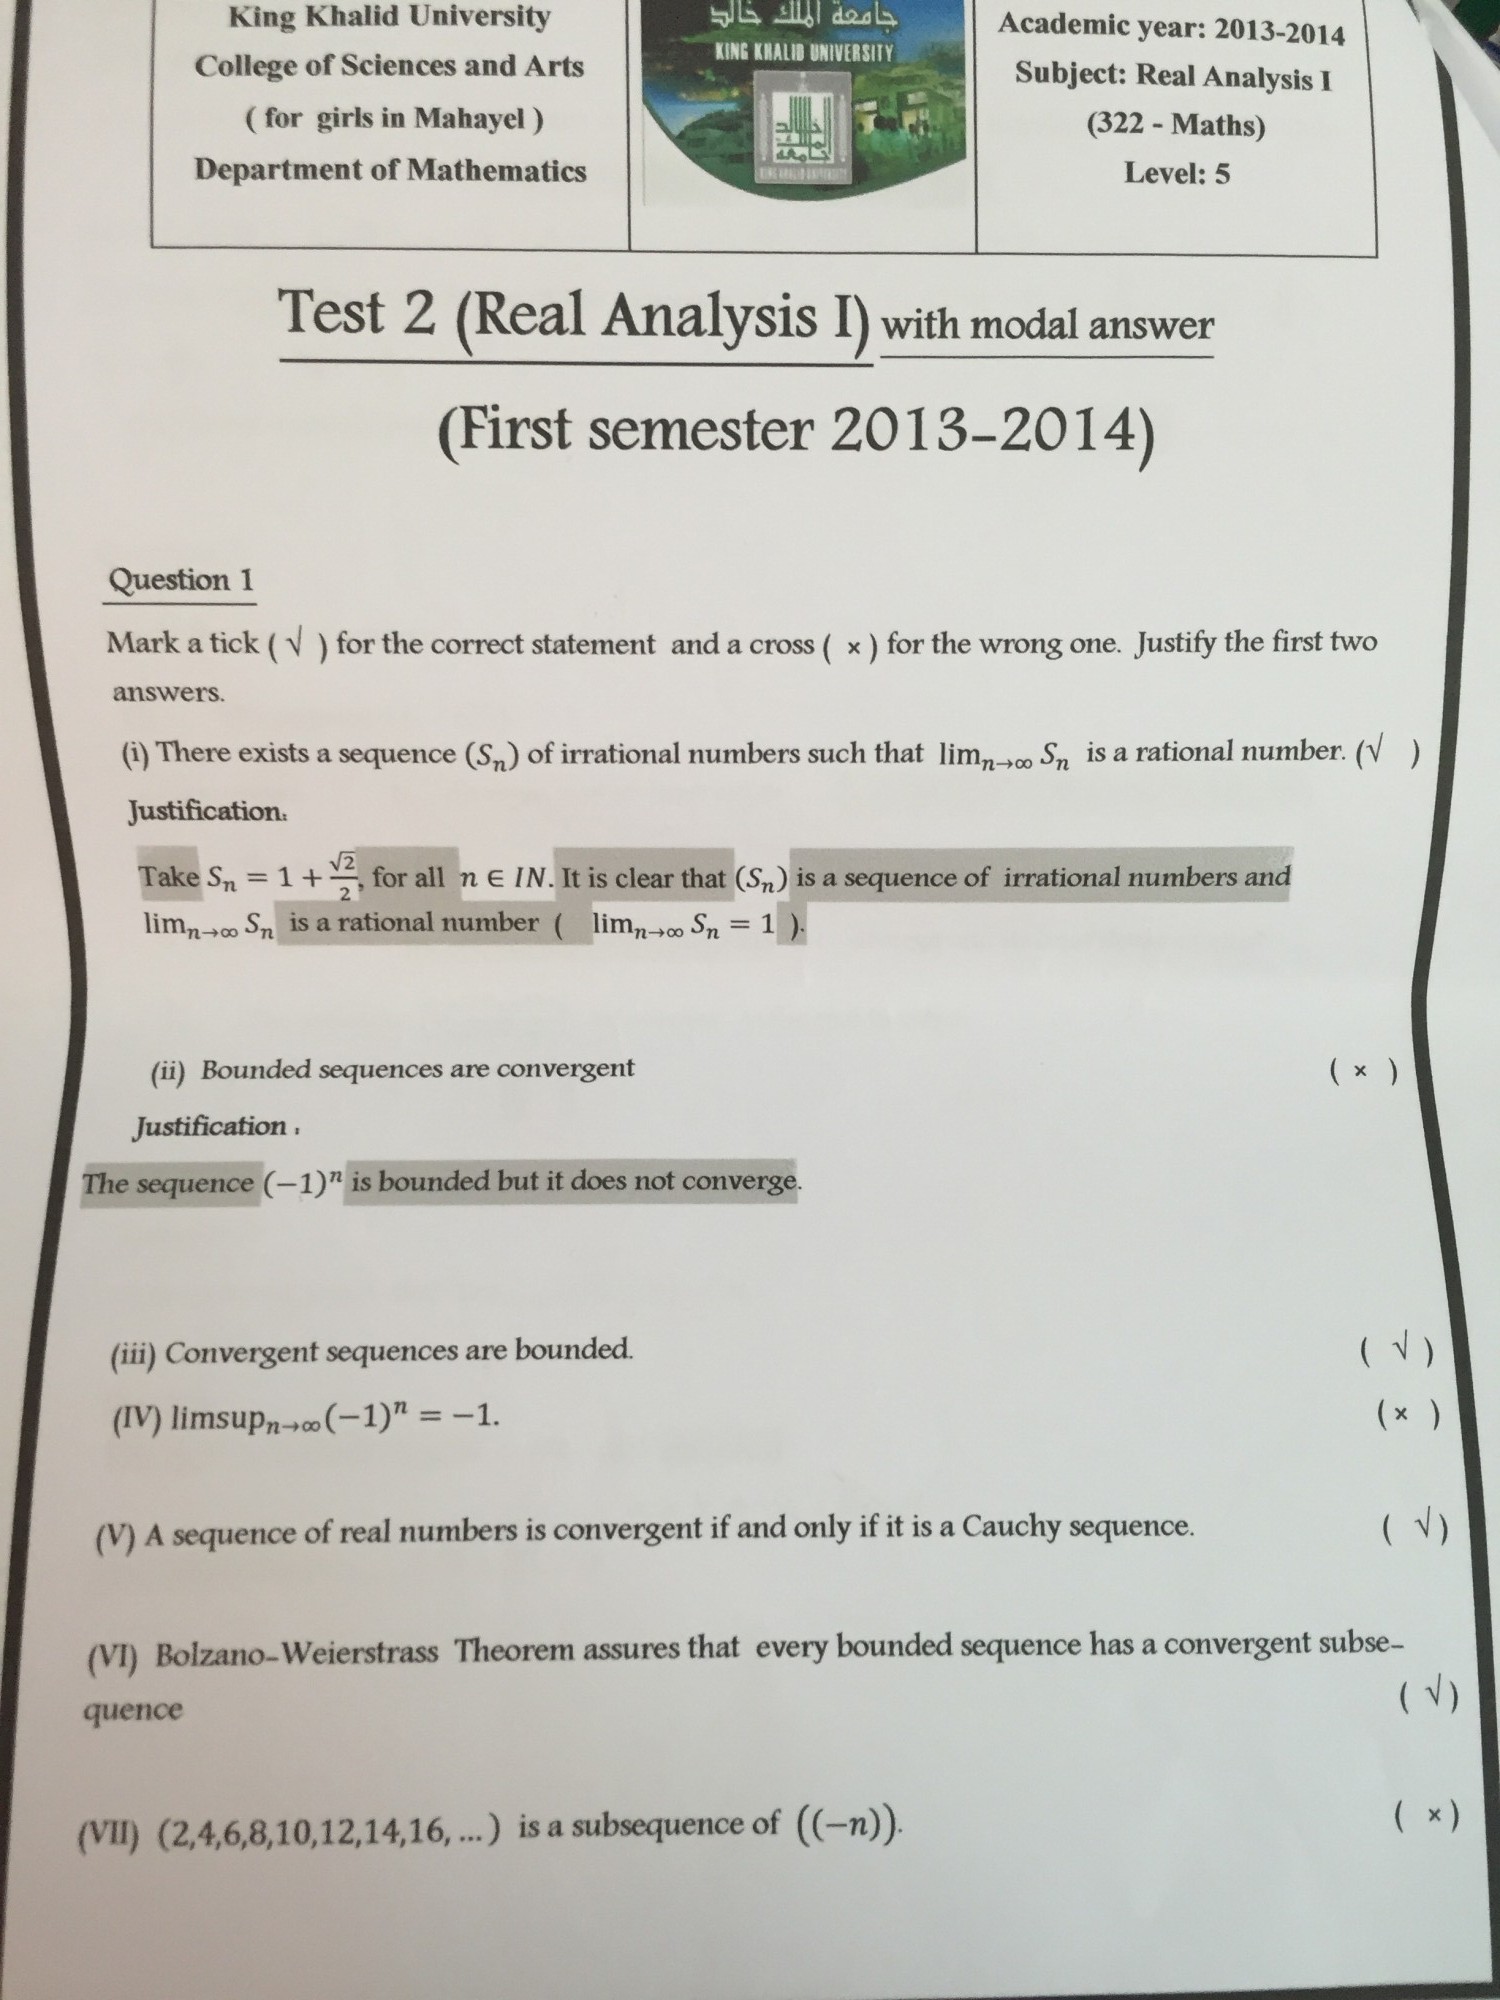 الاختبار الثاني للتحليل الحقيقي1 للعام الجامعي 2014